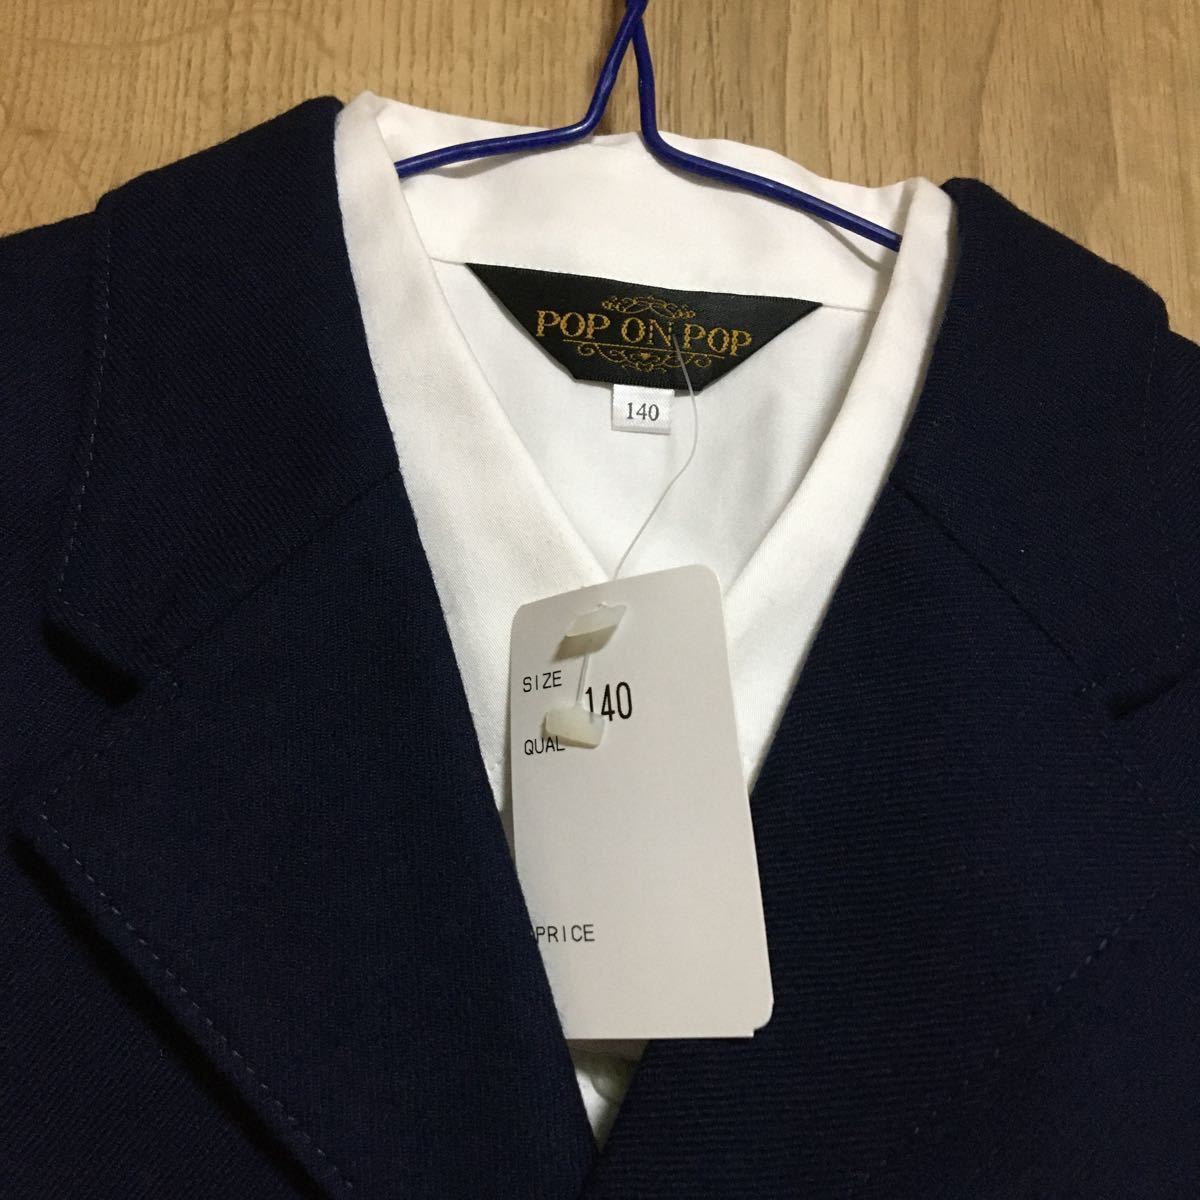 [ новый товар ]POP ON POP* темно-синий костюм полный комплект ( жакет, брюки, рубашка, галстук )* размер 130*.. тип, входить . тип, выход 